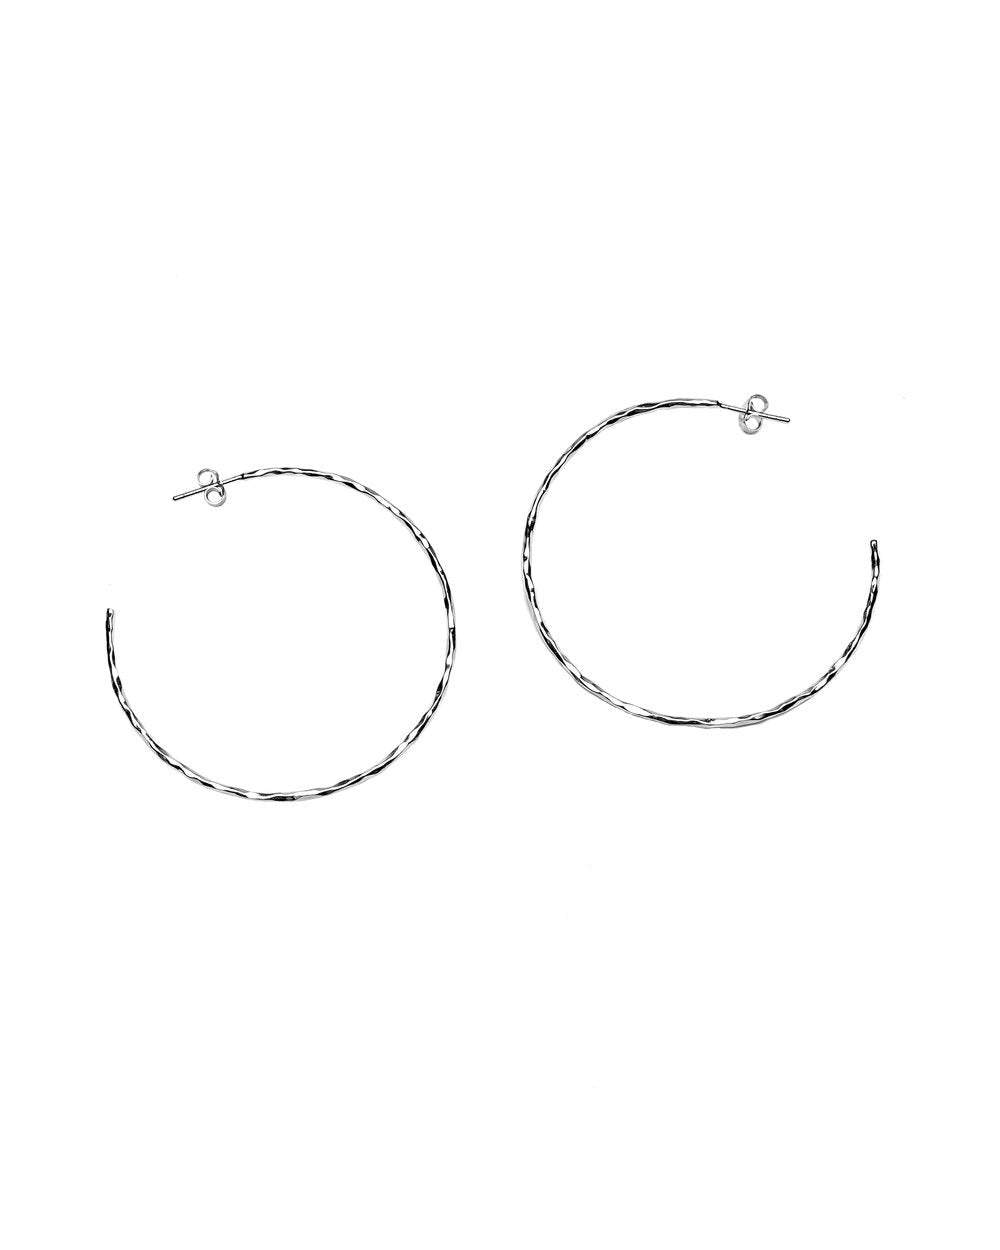 Charlotte Large C-Hoop Earrings